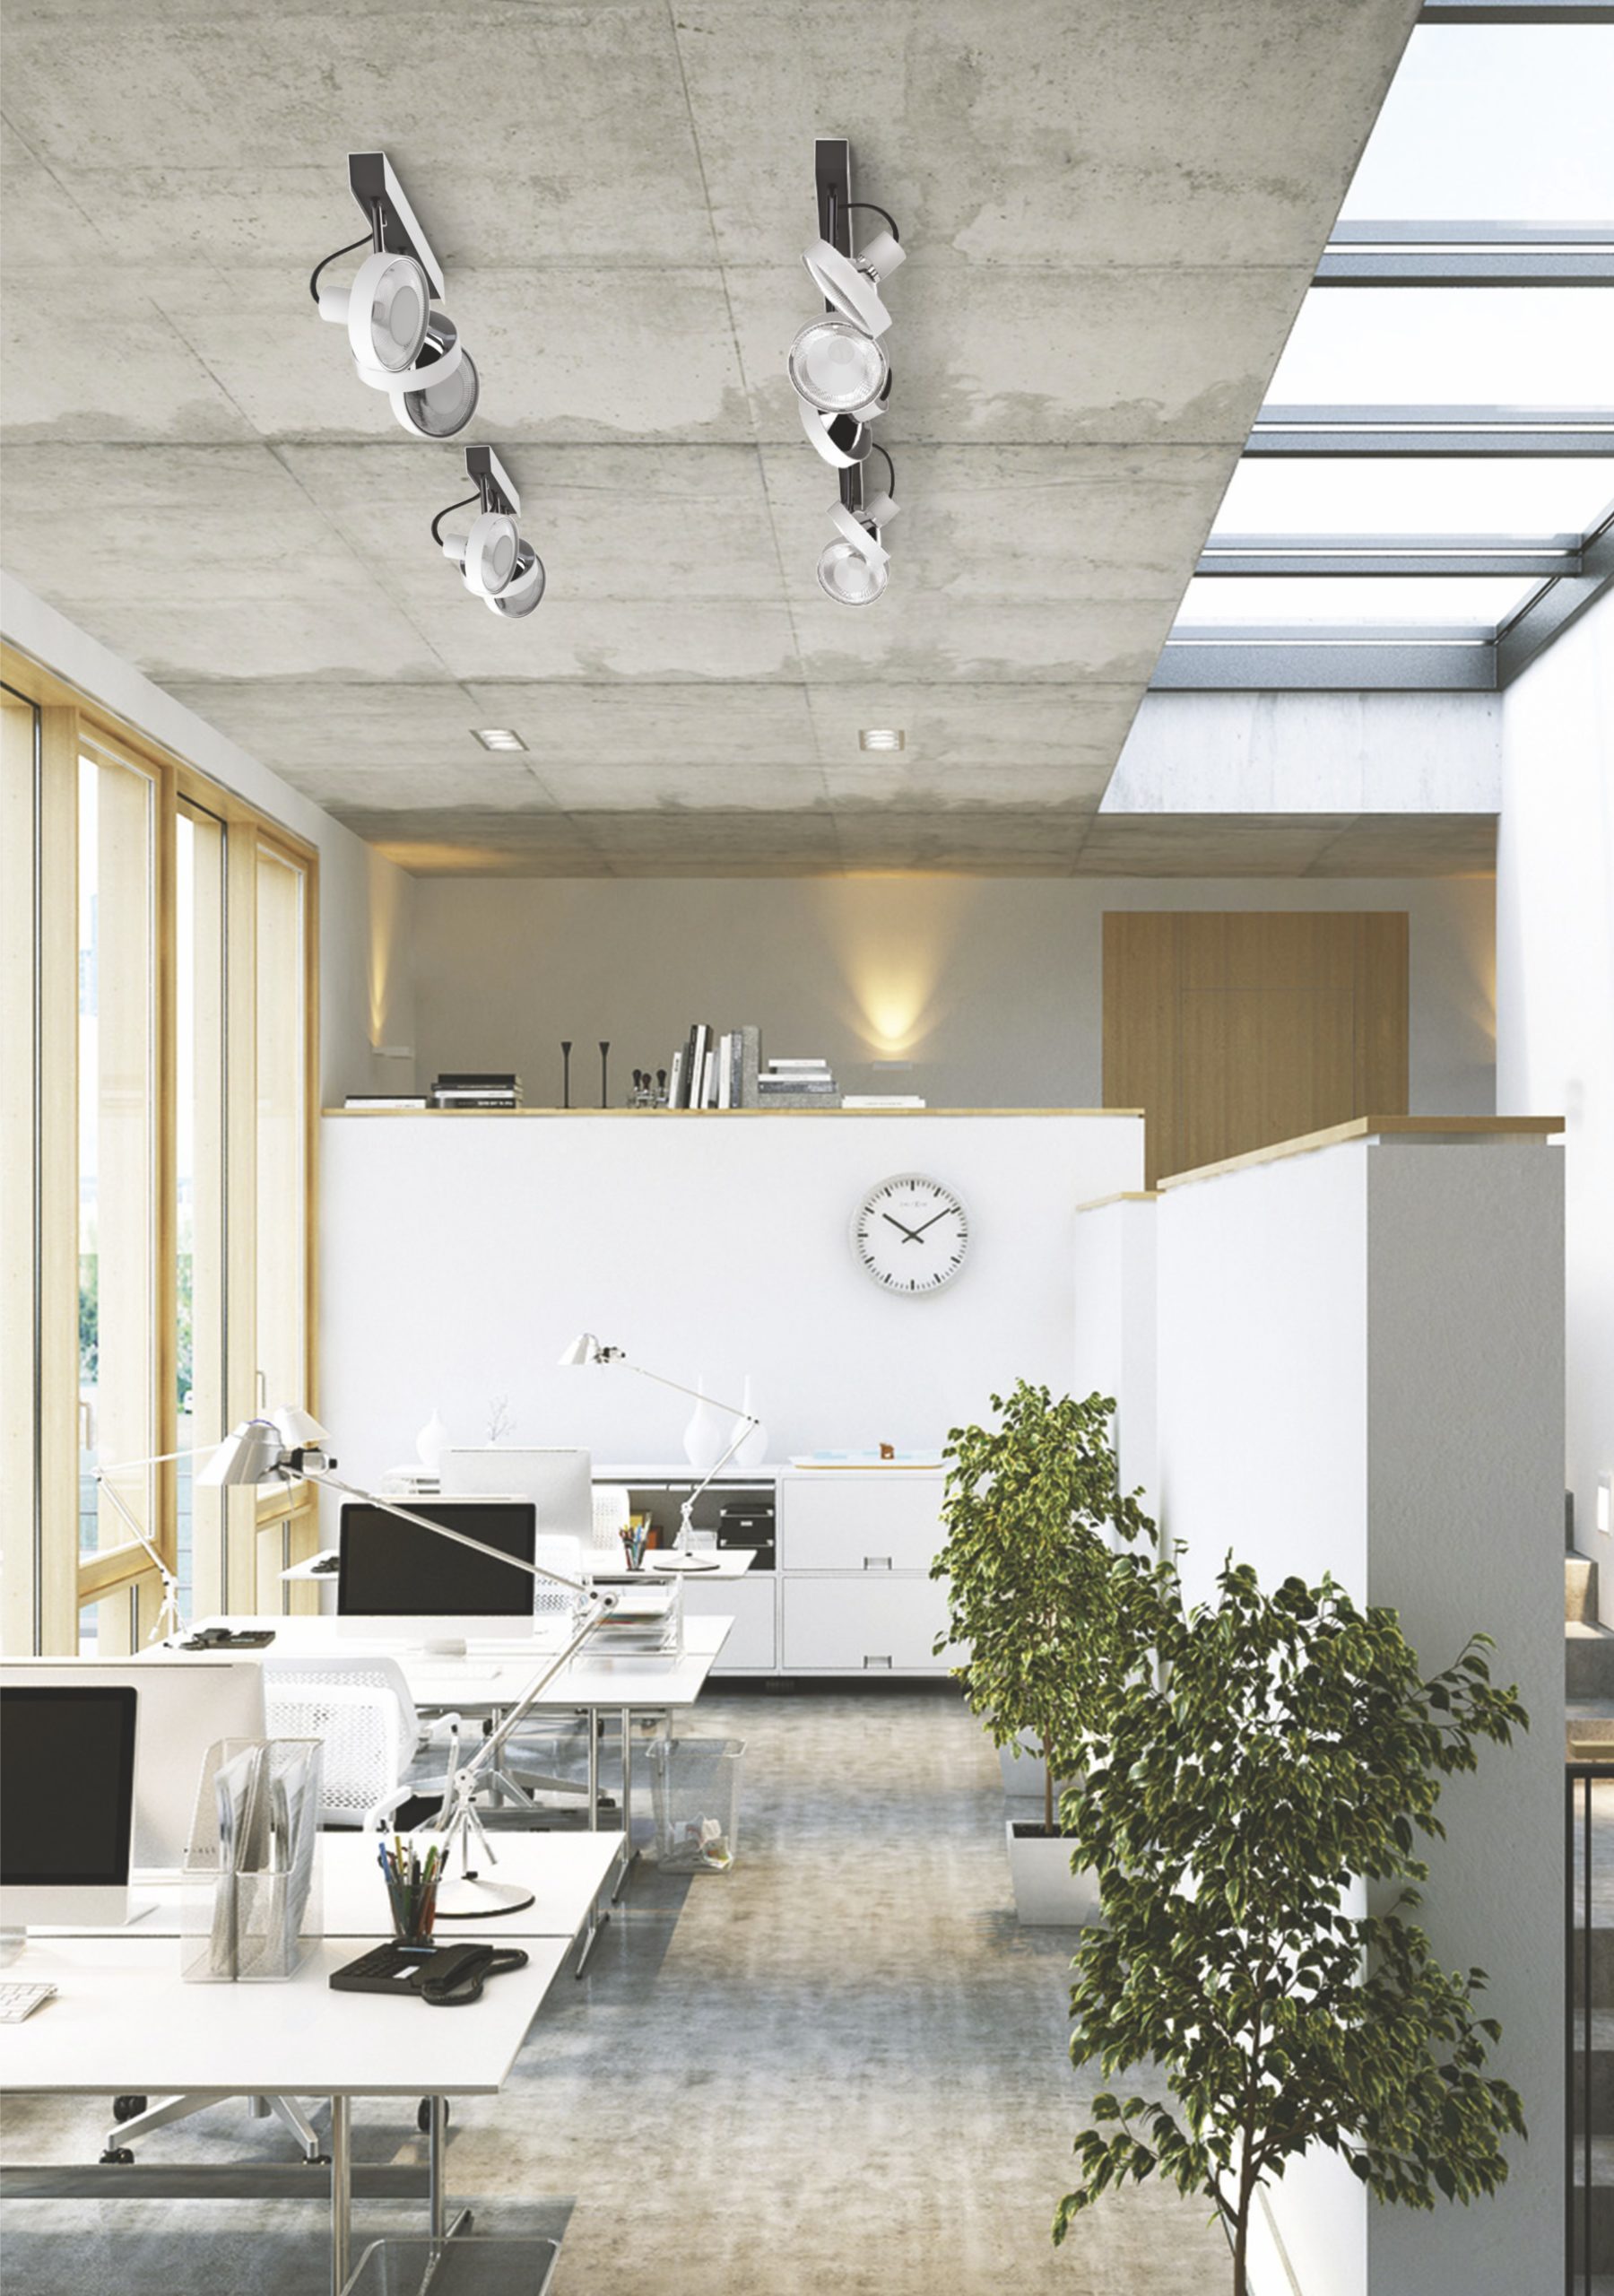 Kolekcja CROSS marki Nowodvorski Lighting , lampy, cross, biuro - Lampy CROSS to idealne uzupełnienie nowoczesnego, minimalistycznego wnętrza. Prosty, elegancki design współgra z aranżacją zarówno przestrzeni biurowej, jak i domowej.